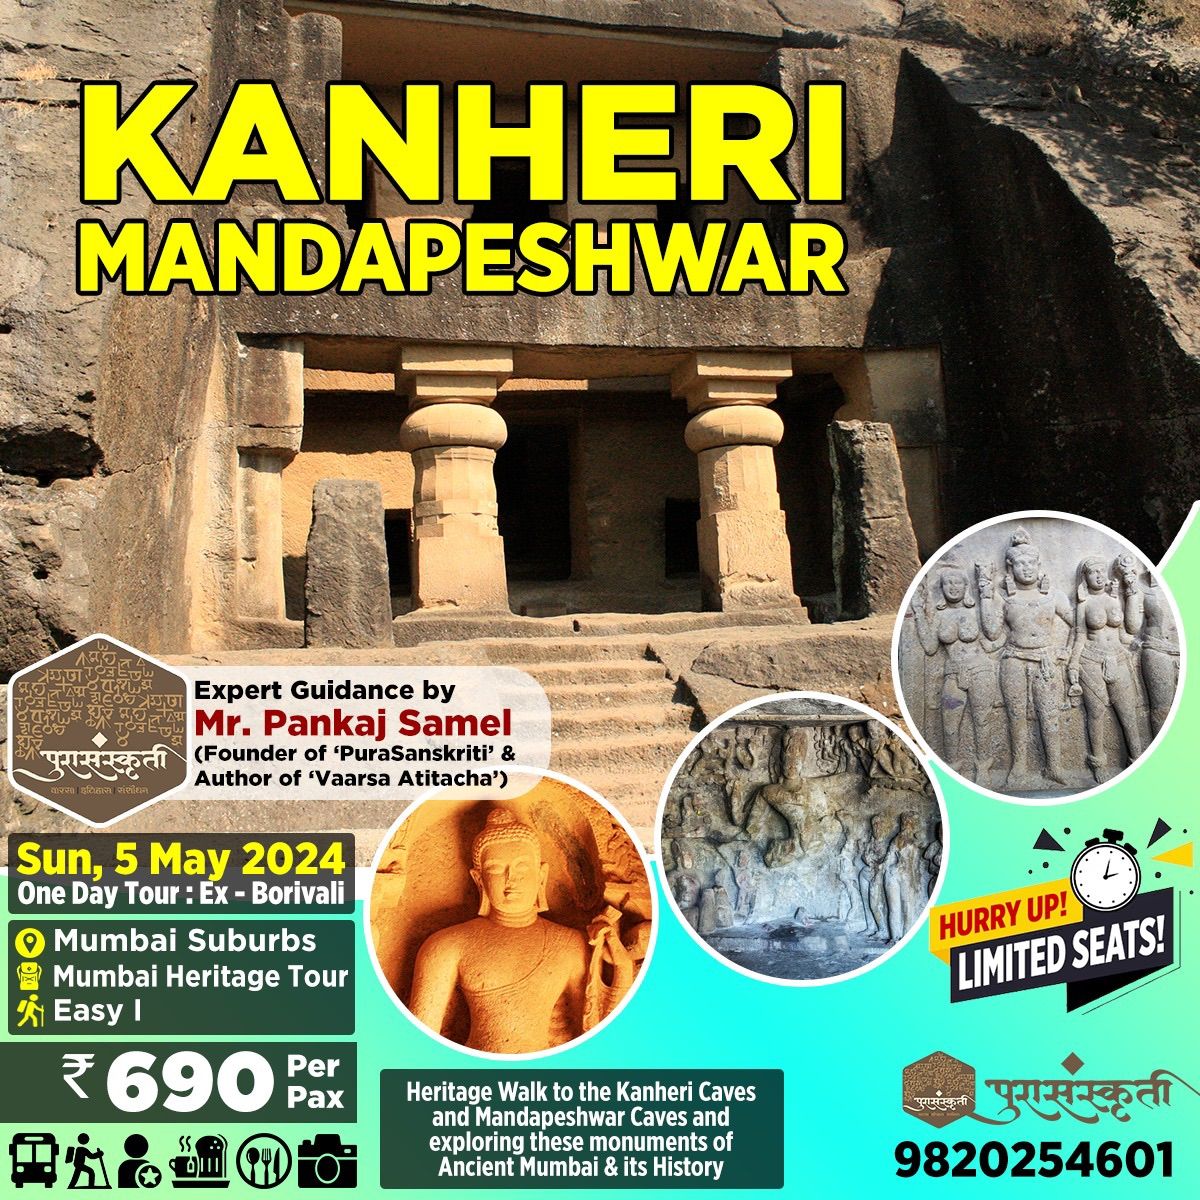 Heritage Tour of Kanheri and Mandapeshwar Caves